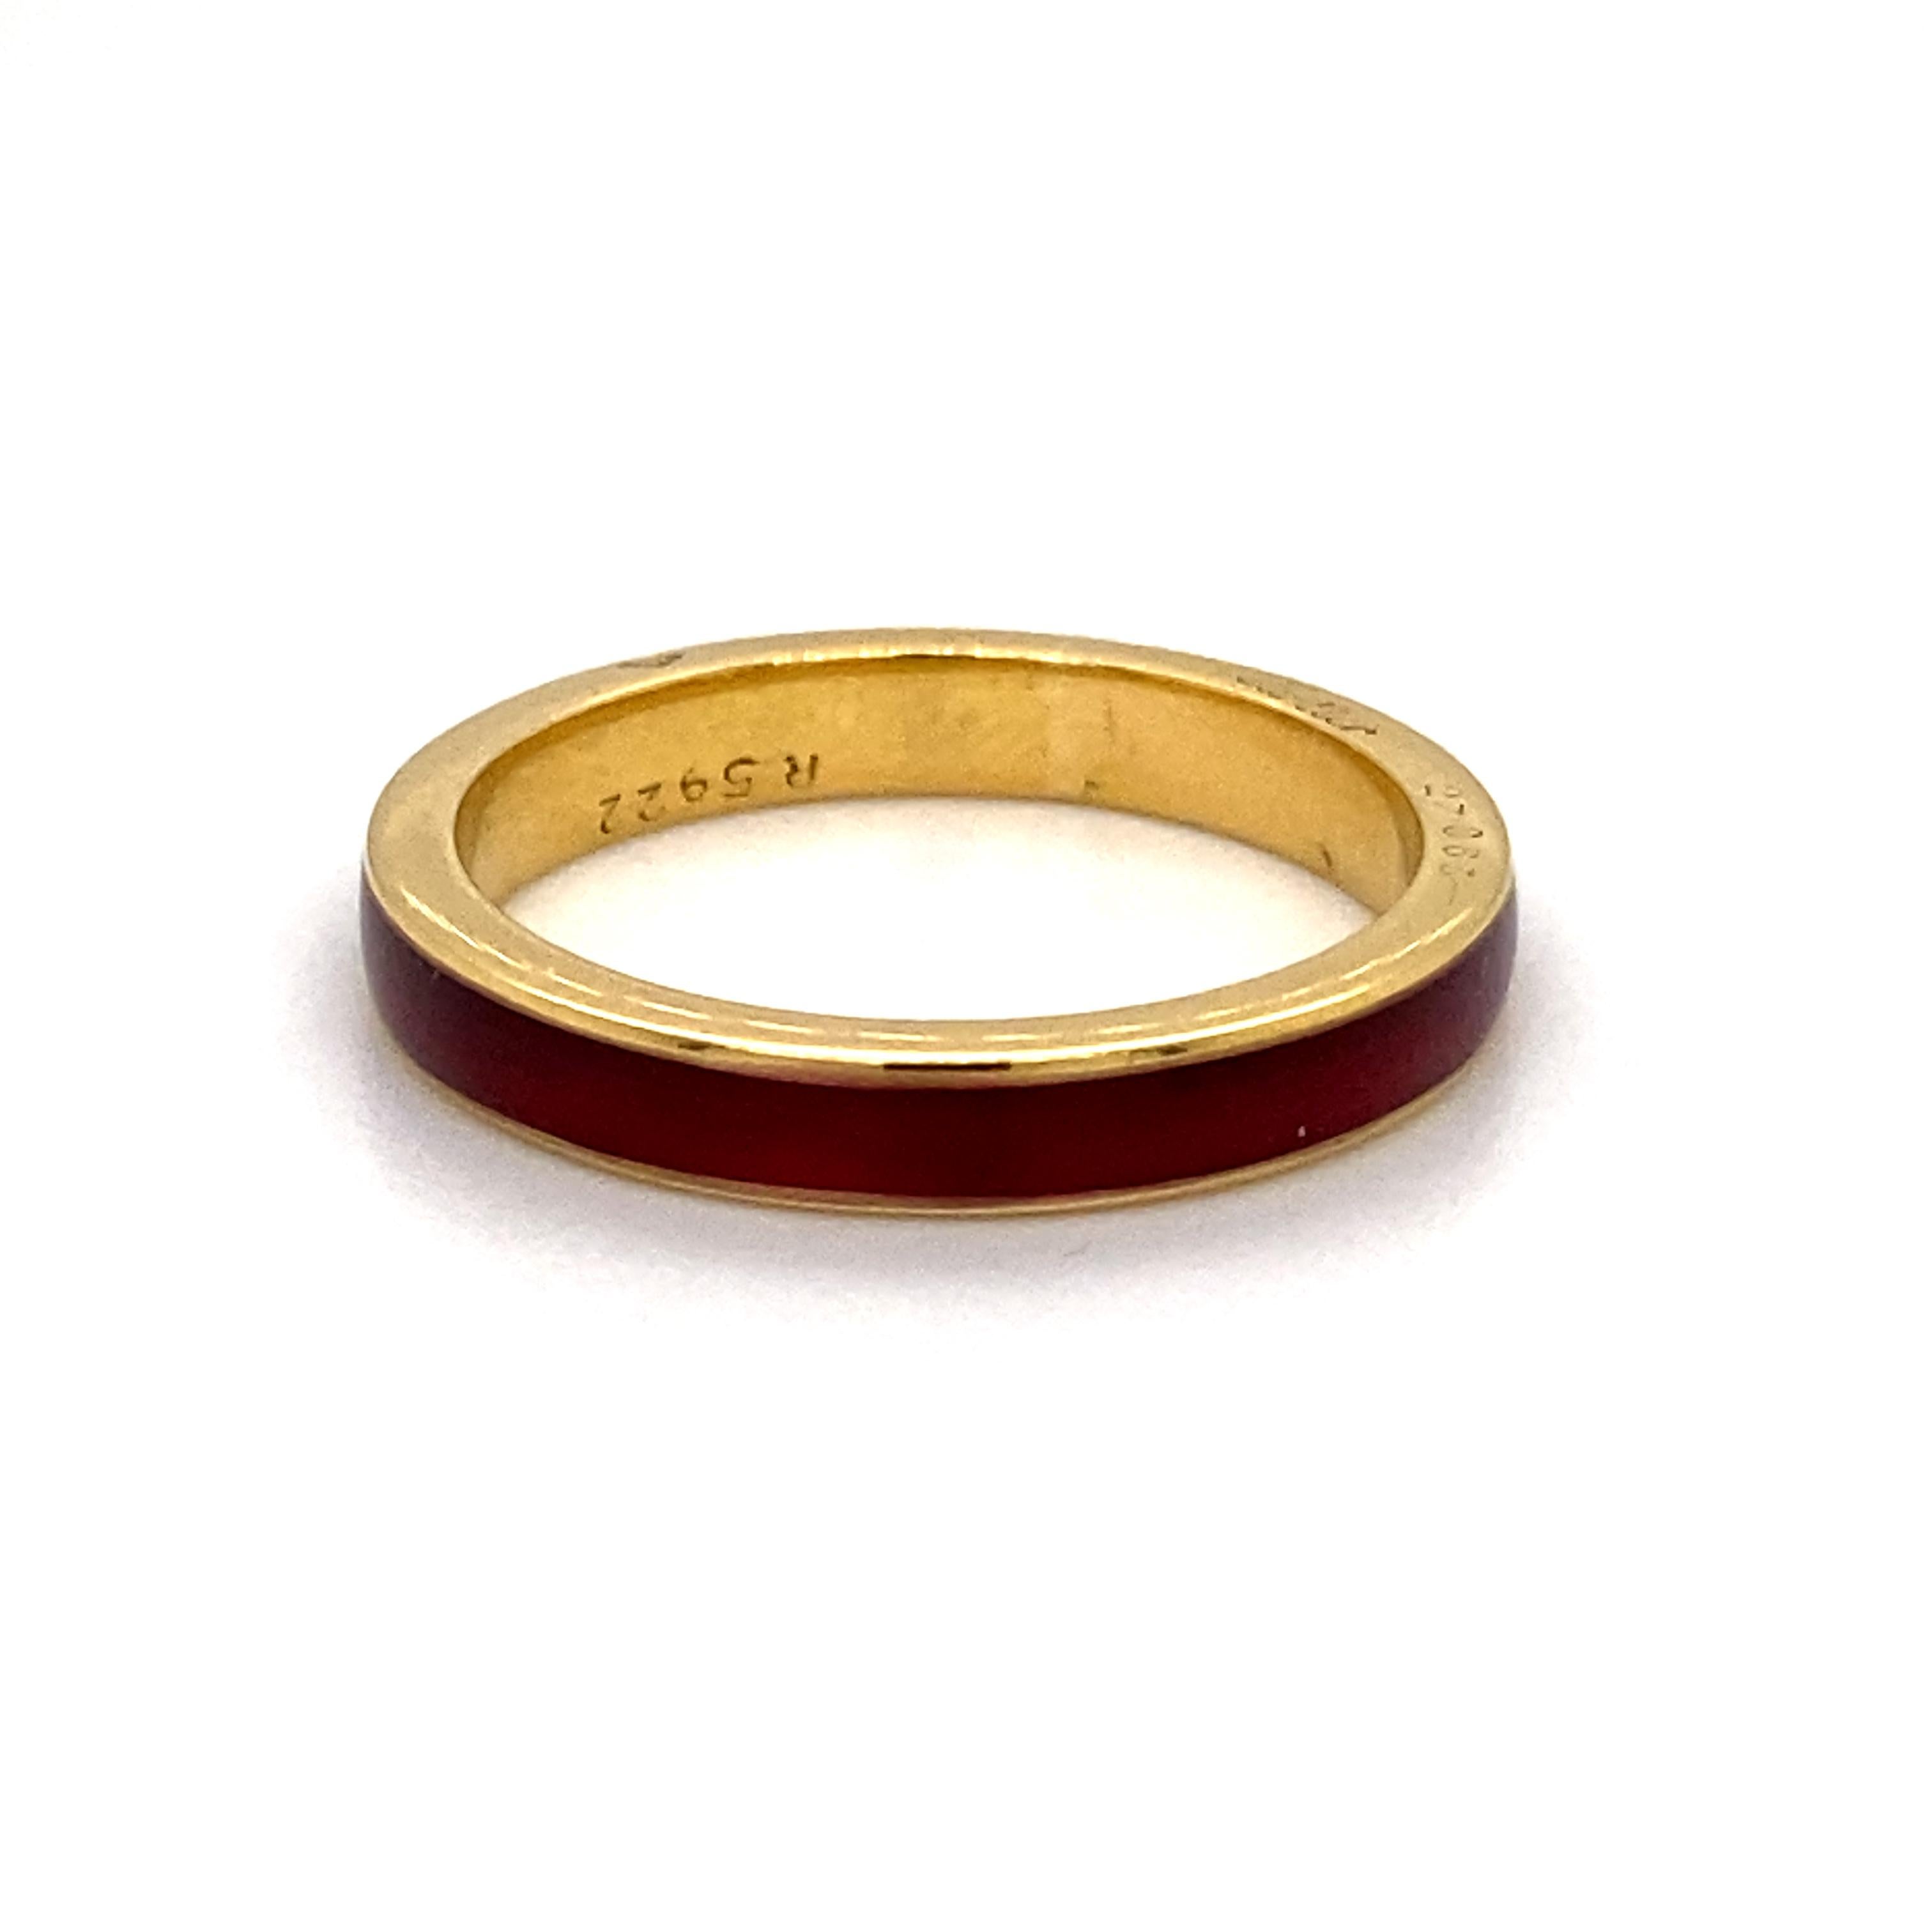 Ein Cartier Armband aus 18 Karat Gelbgold mit roter Emaille, um 1960.

Ein einfaches Band aus 18 Karat Gelbgold mit einem Ring aus tiefroter Guilloche-Emaille in der Mitte.

Ein wunderschöner, eleganter Ring, der allein oder als Teil eines Stapels